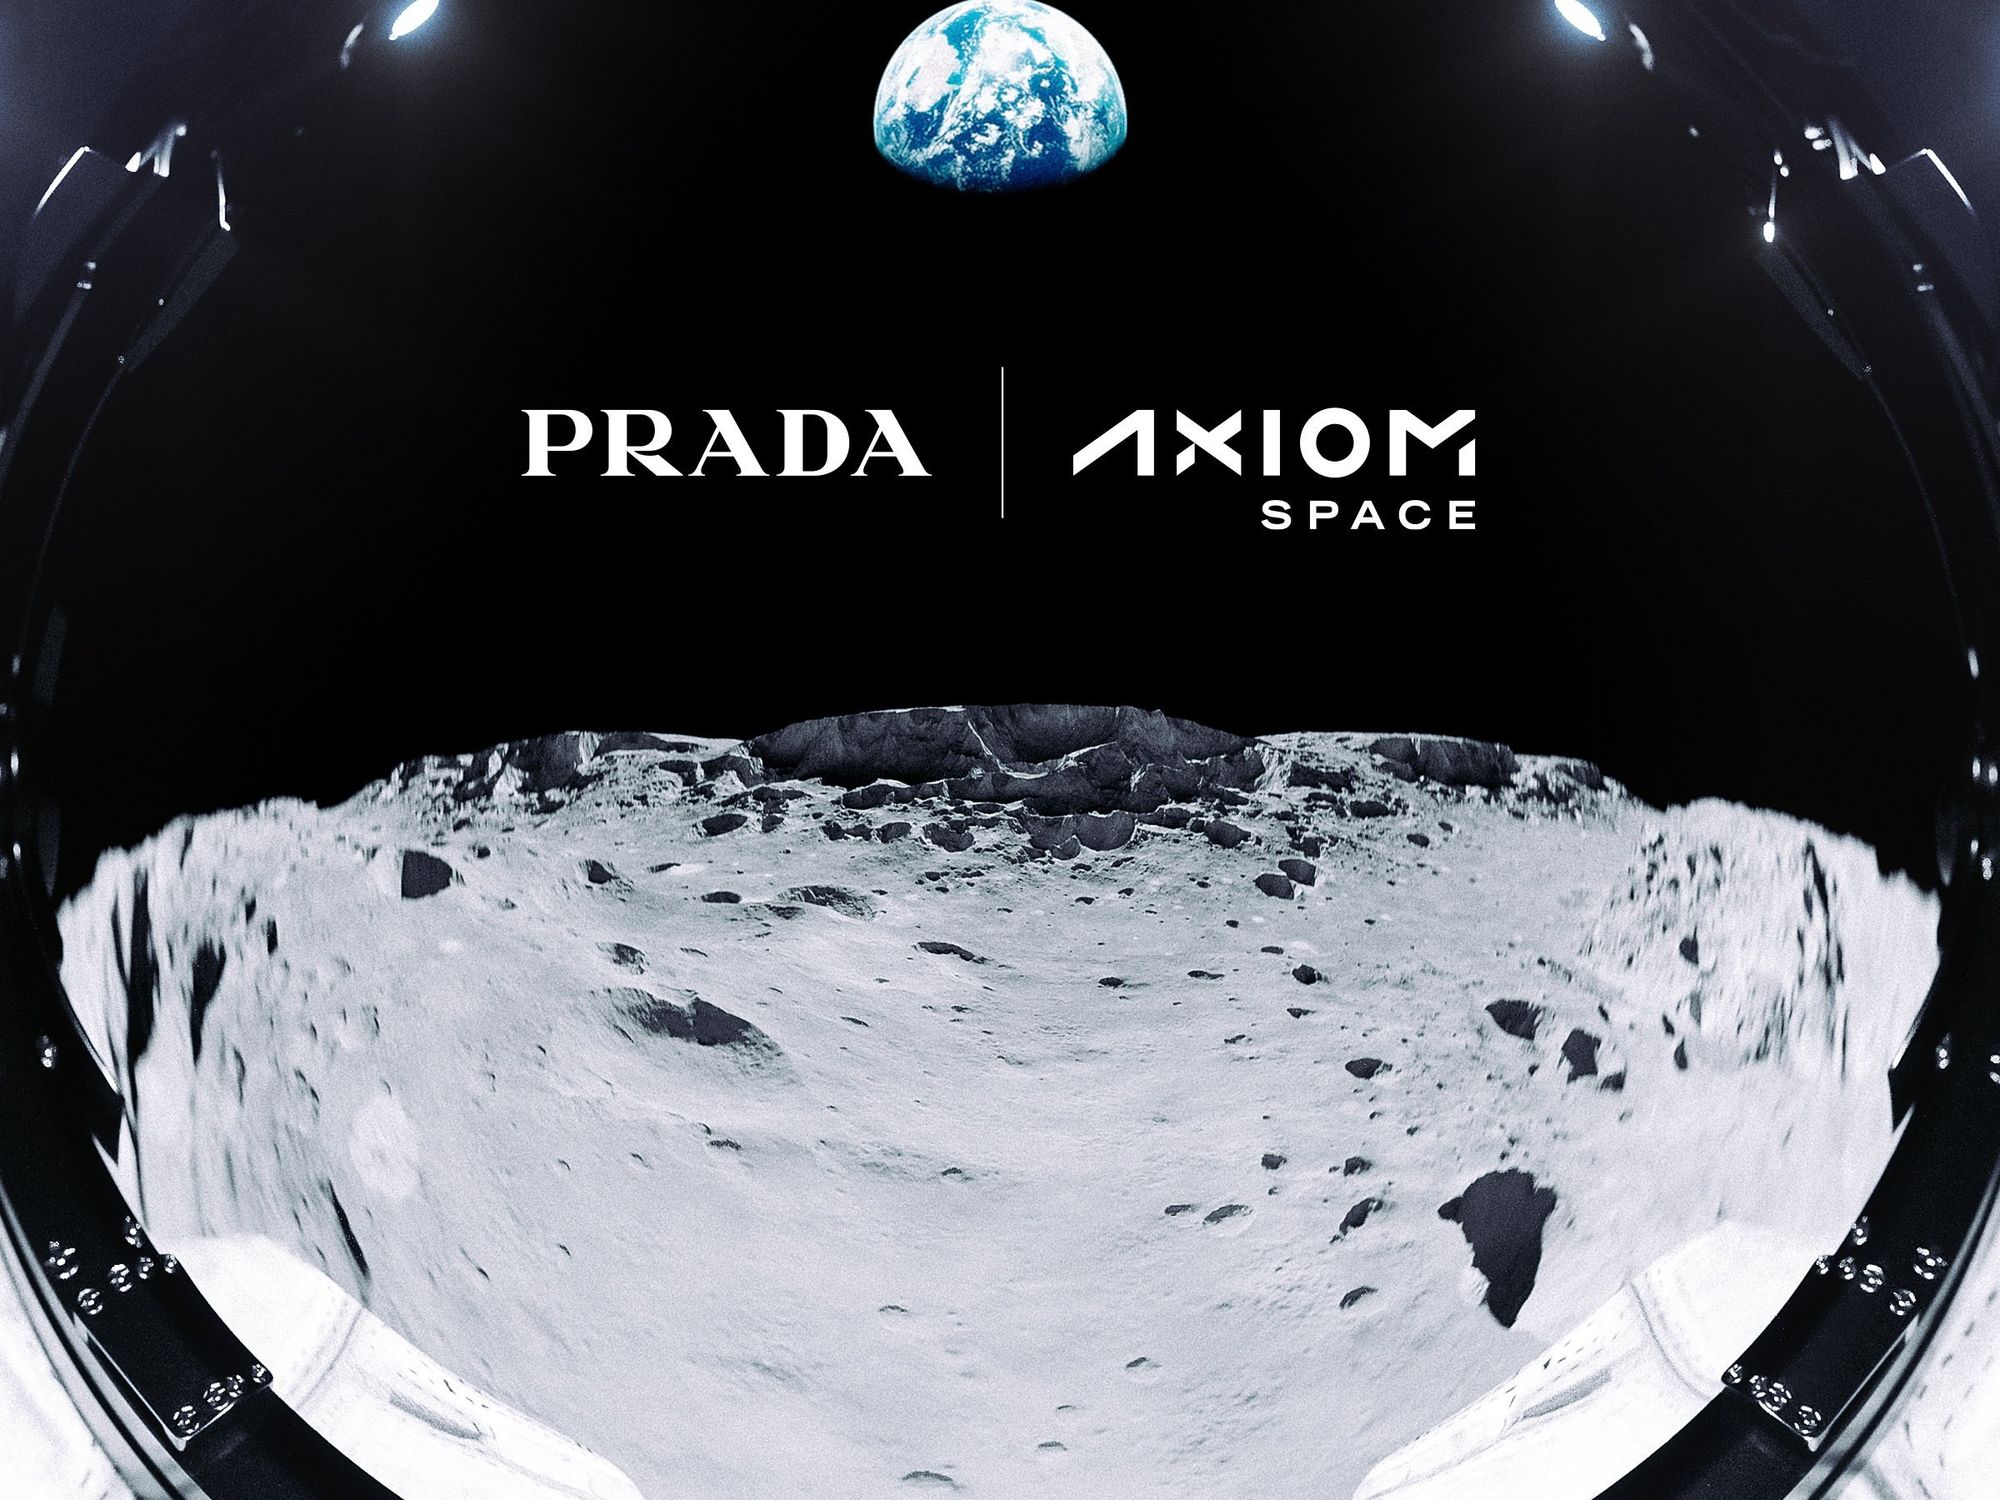 Prada Axiom spacesuit